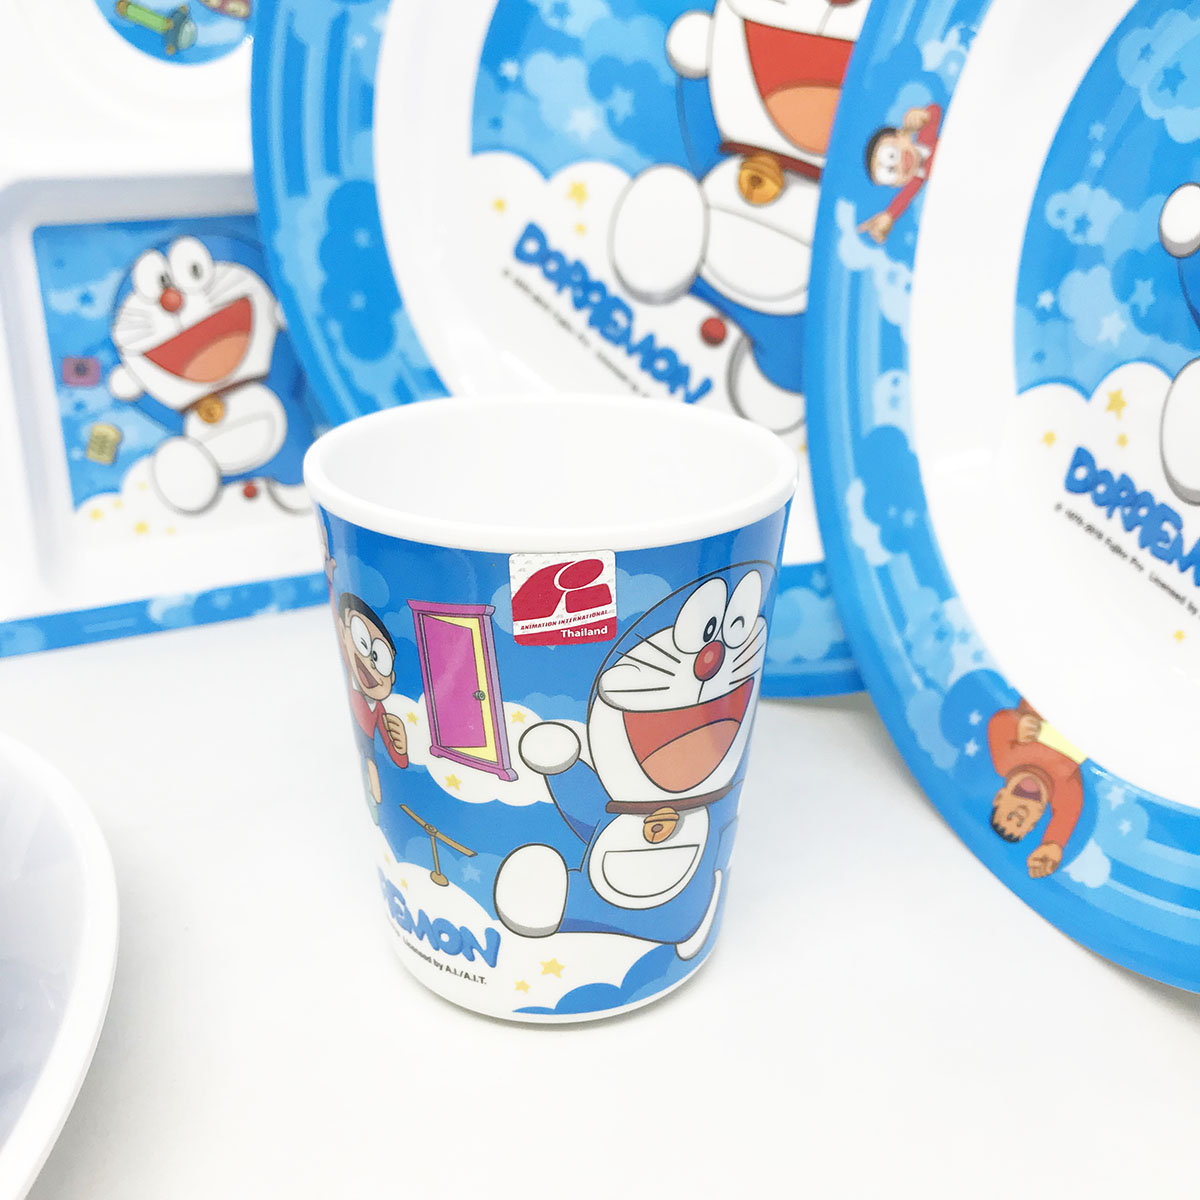 [ขายแยกชิ้น] จานข้าวเด็ก ถาดหลุม ช้อนส้อม แก้วน้ำ Doraemon โดเรม่อน - สกาย ศรีไทยซุปเปอร์แวร์  / 1 ชิ้น